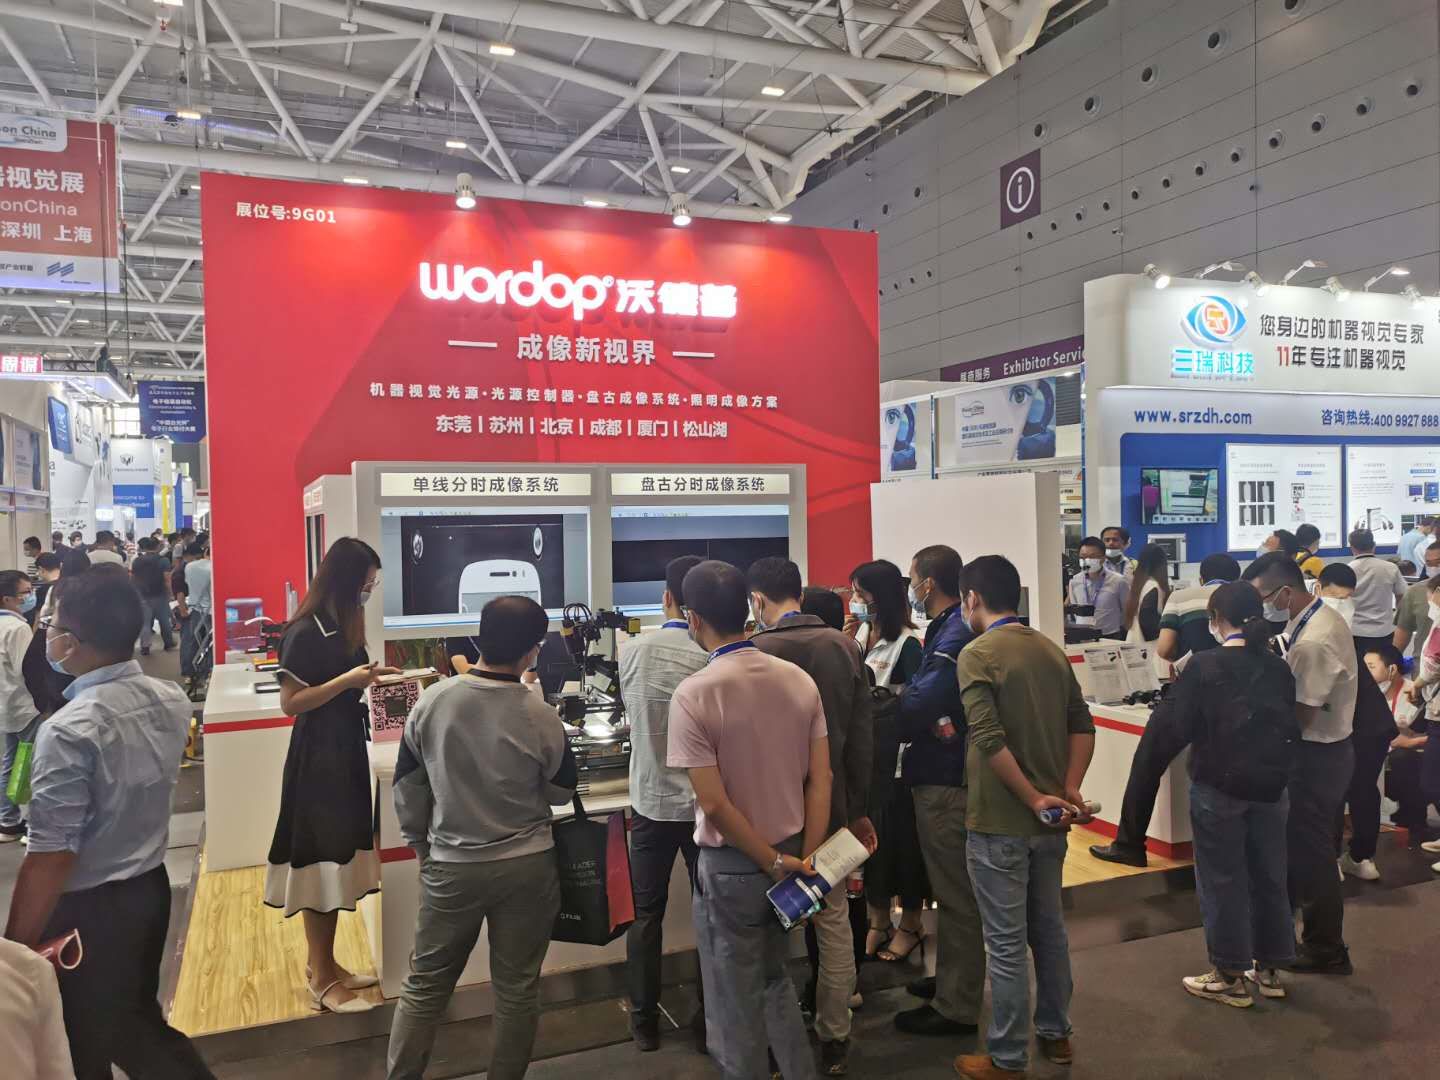 Wordop attends visionchina 2020 Machine Vision Exhibition